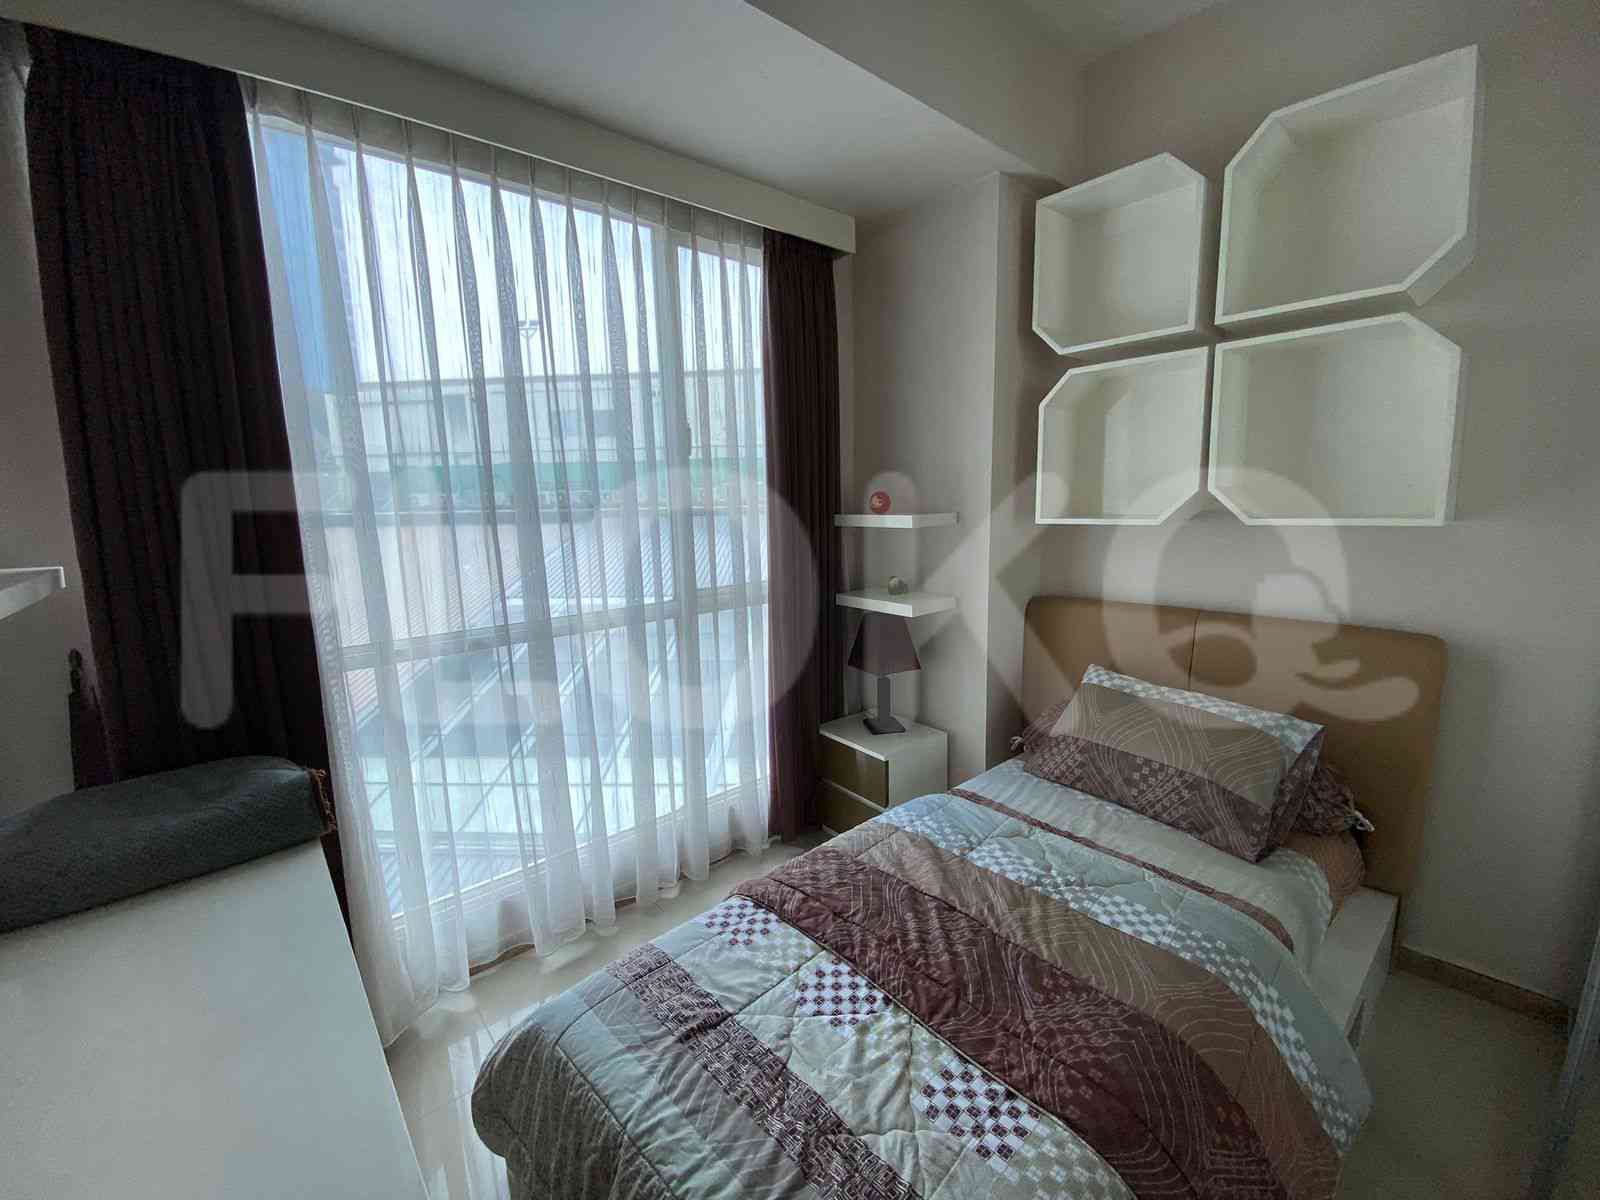 2 Bedroom on 6th Floor for Rent in Casa Grande - ftedfc 4